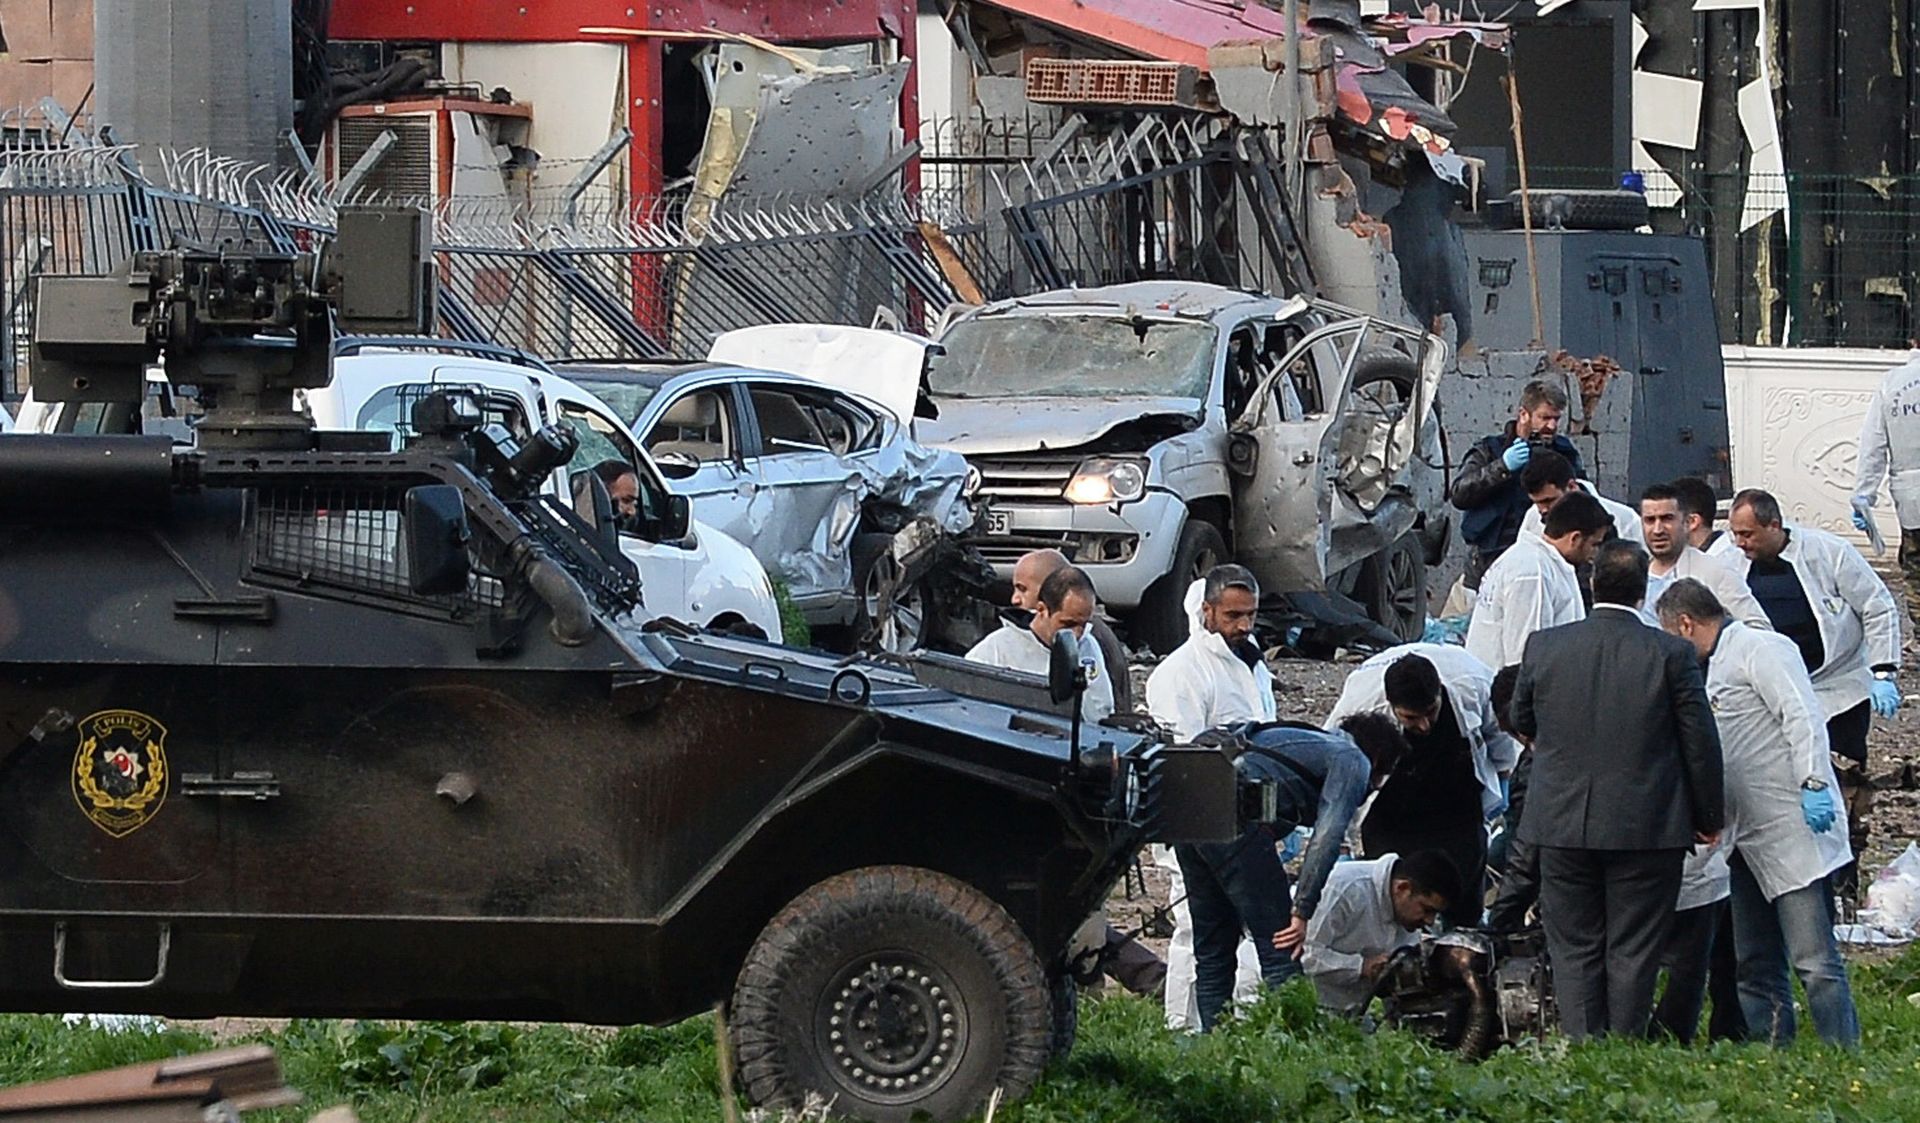 NOVI NAPAD U TURSKOJ Eksplodirala autobomba u policijskoj bazi, poginuo vojnik, 47 ljudi ranjeno